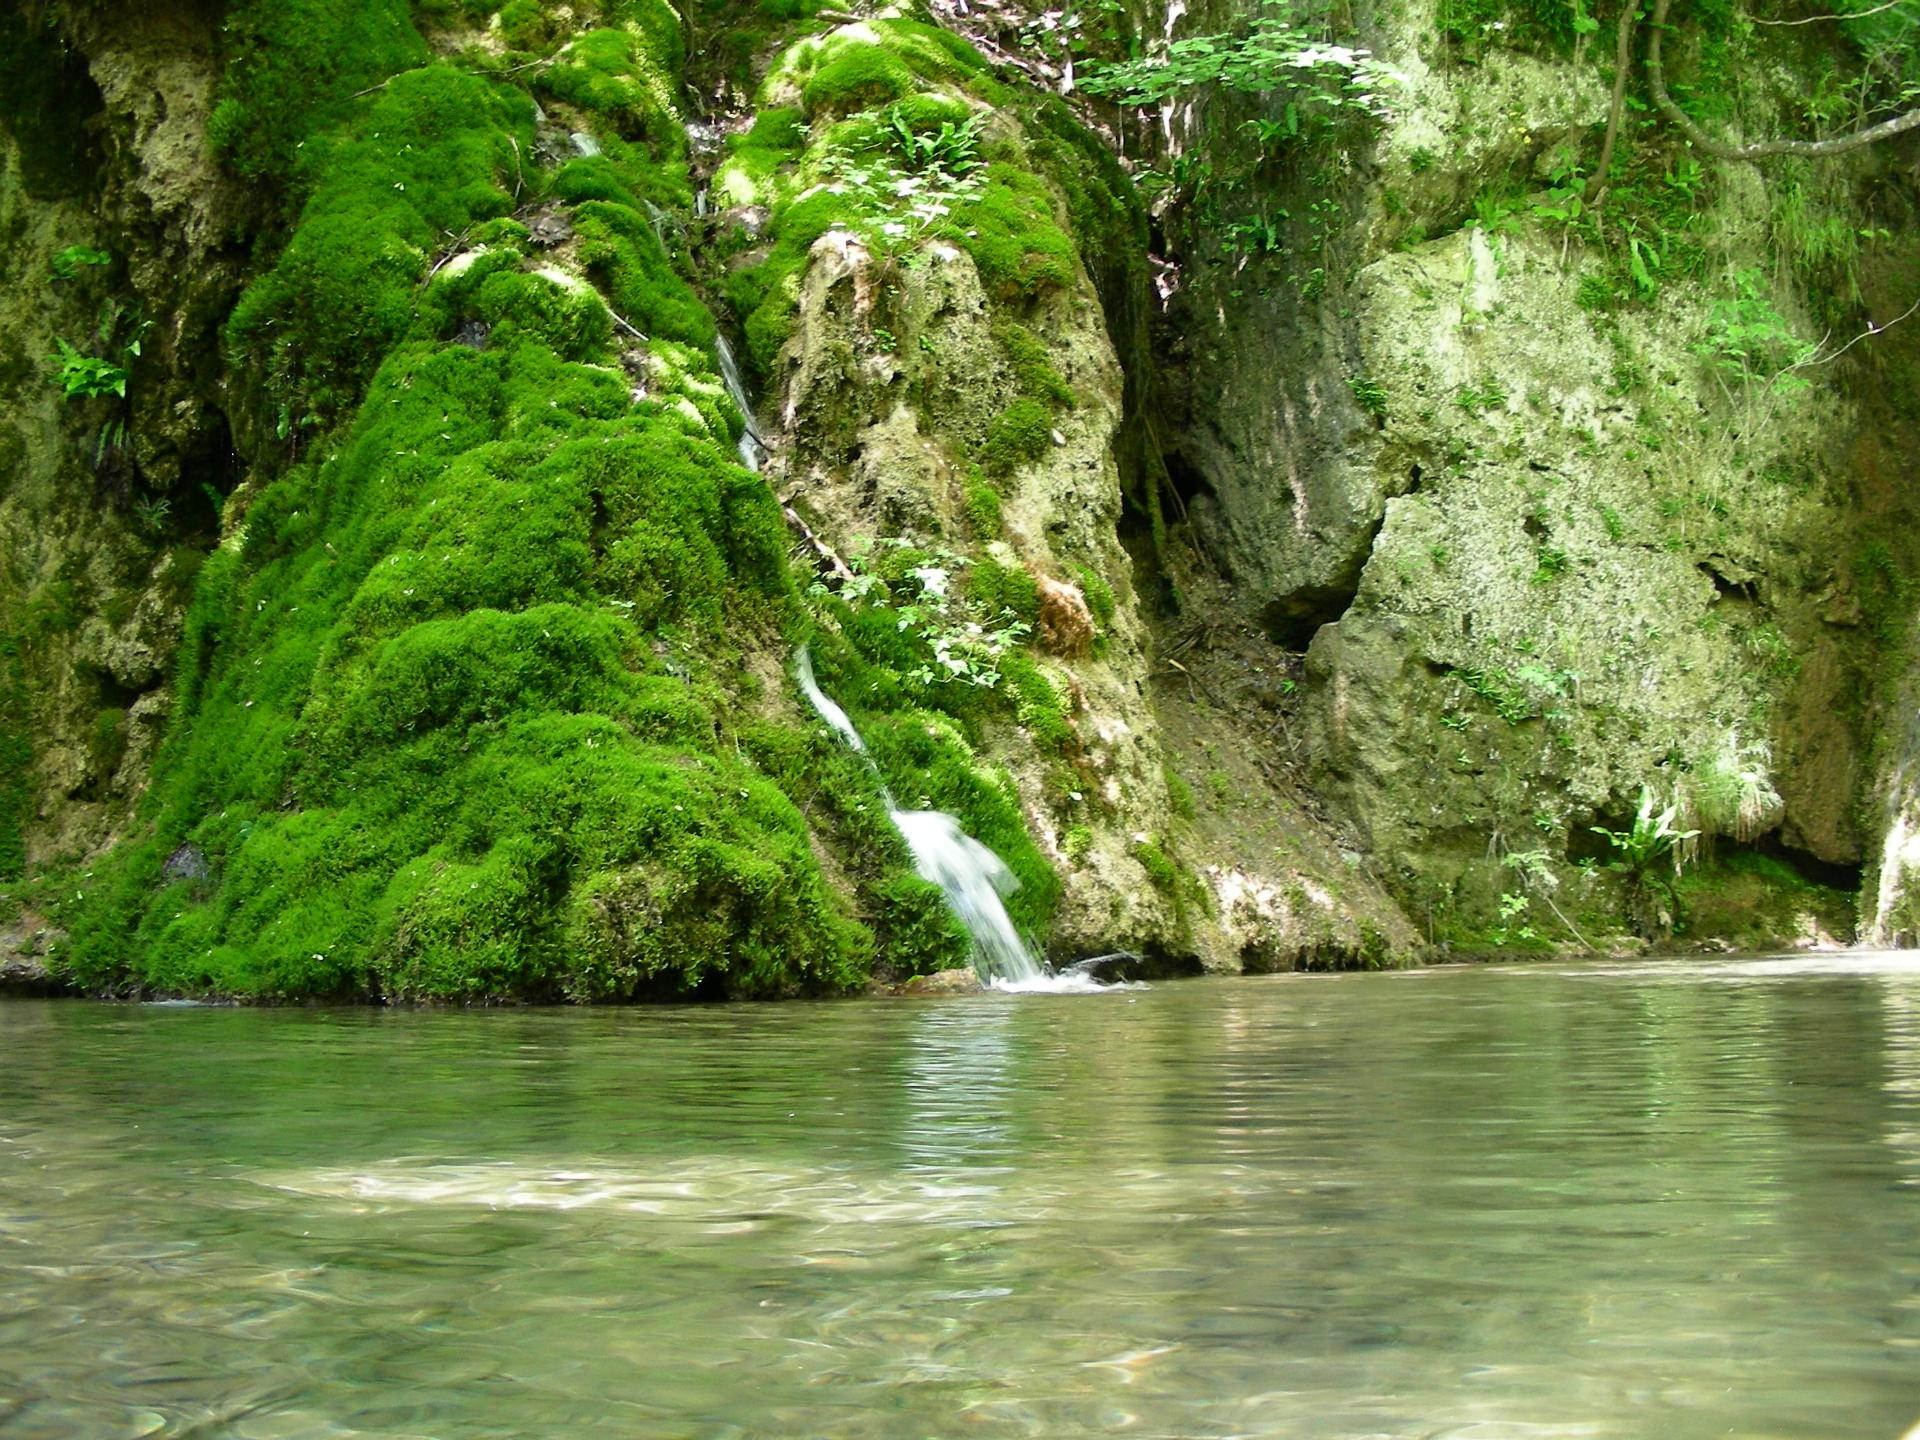 Oberer Wasserfall: mittlerer Ausschnitt mit Becken